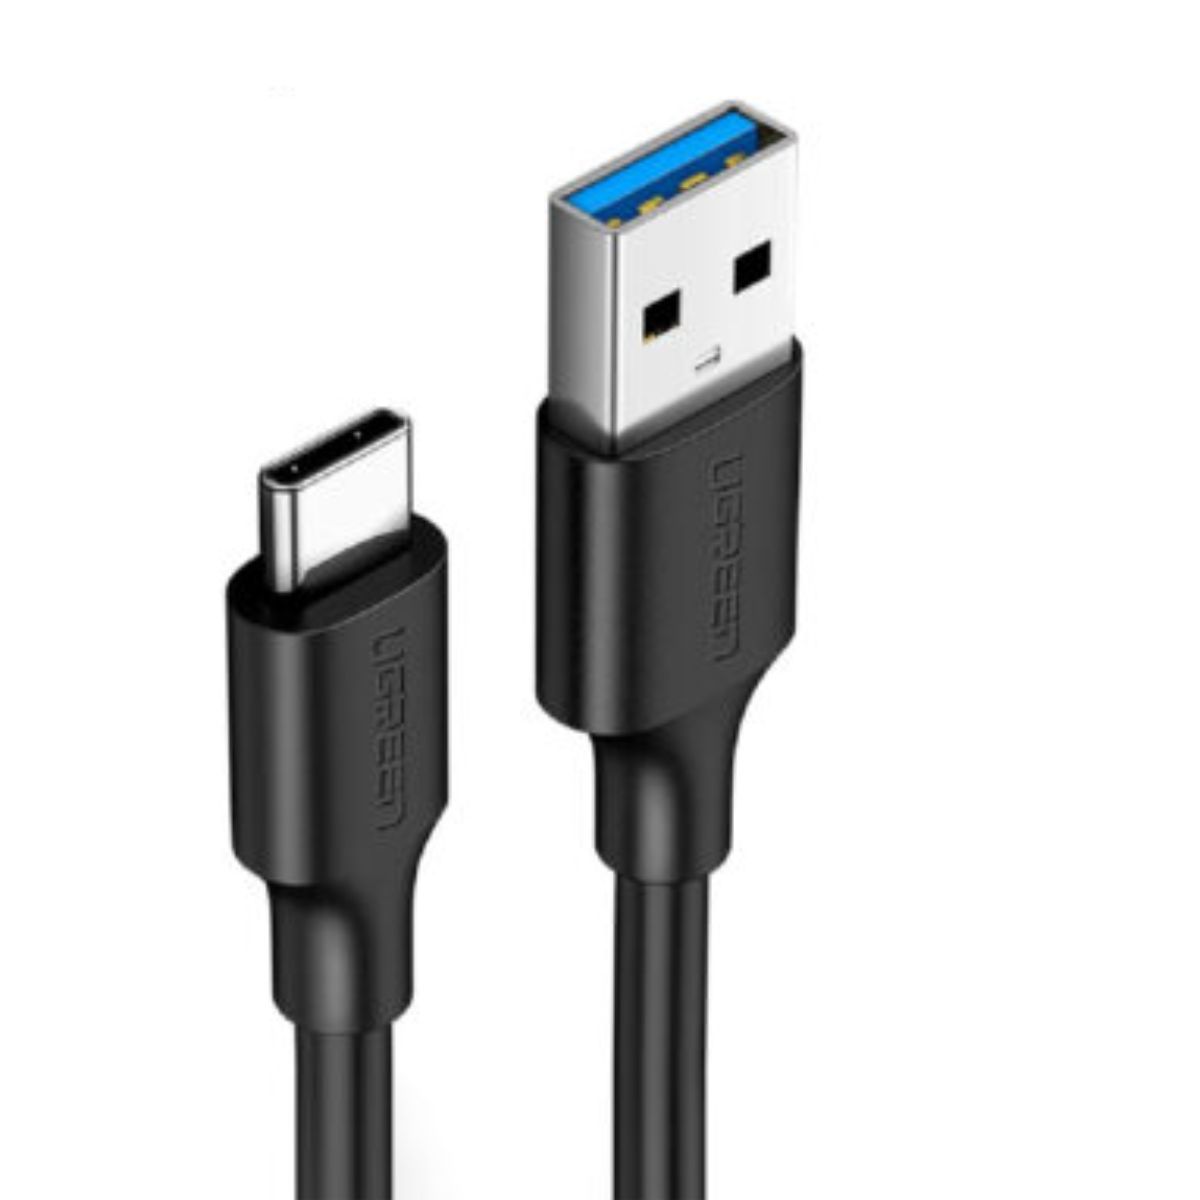 Cáp sạc dài 1.5m USB Type C Ugreen 20883 US184 màu đen, hỗ trợ sạc nhanh 3A